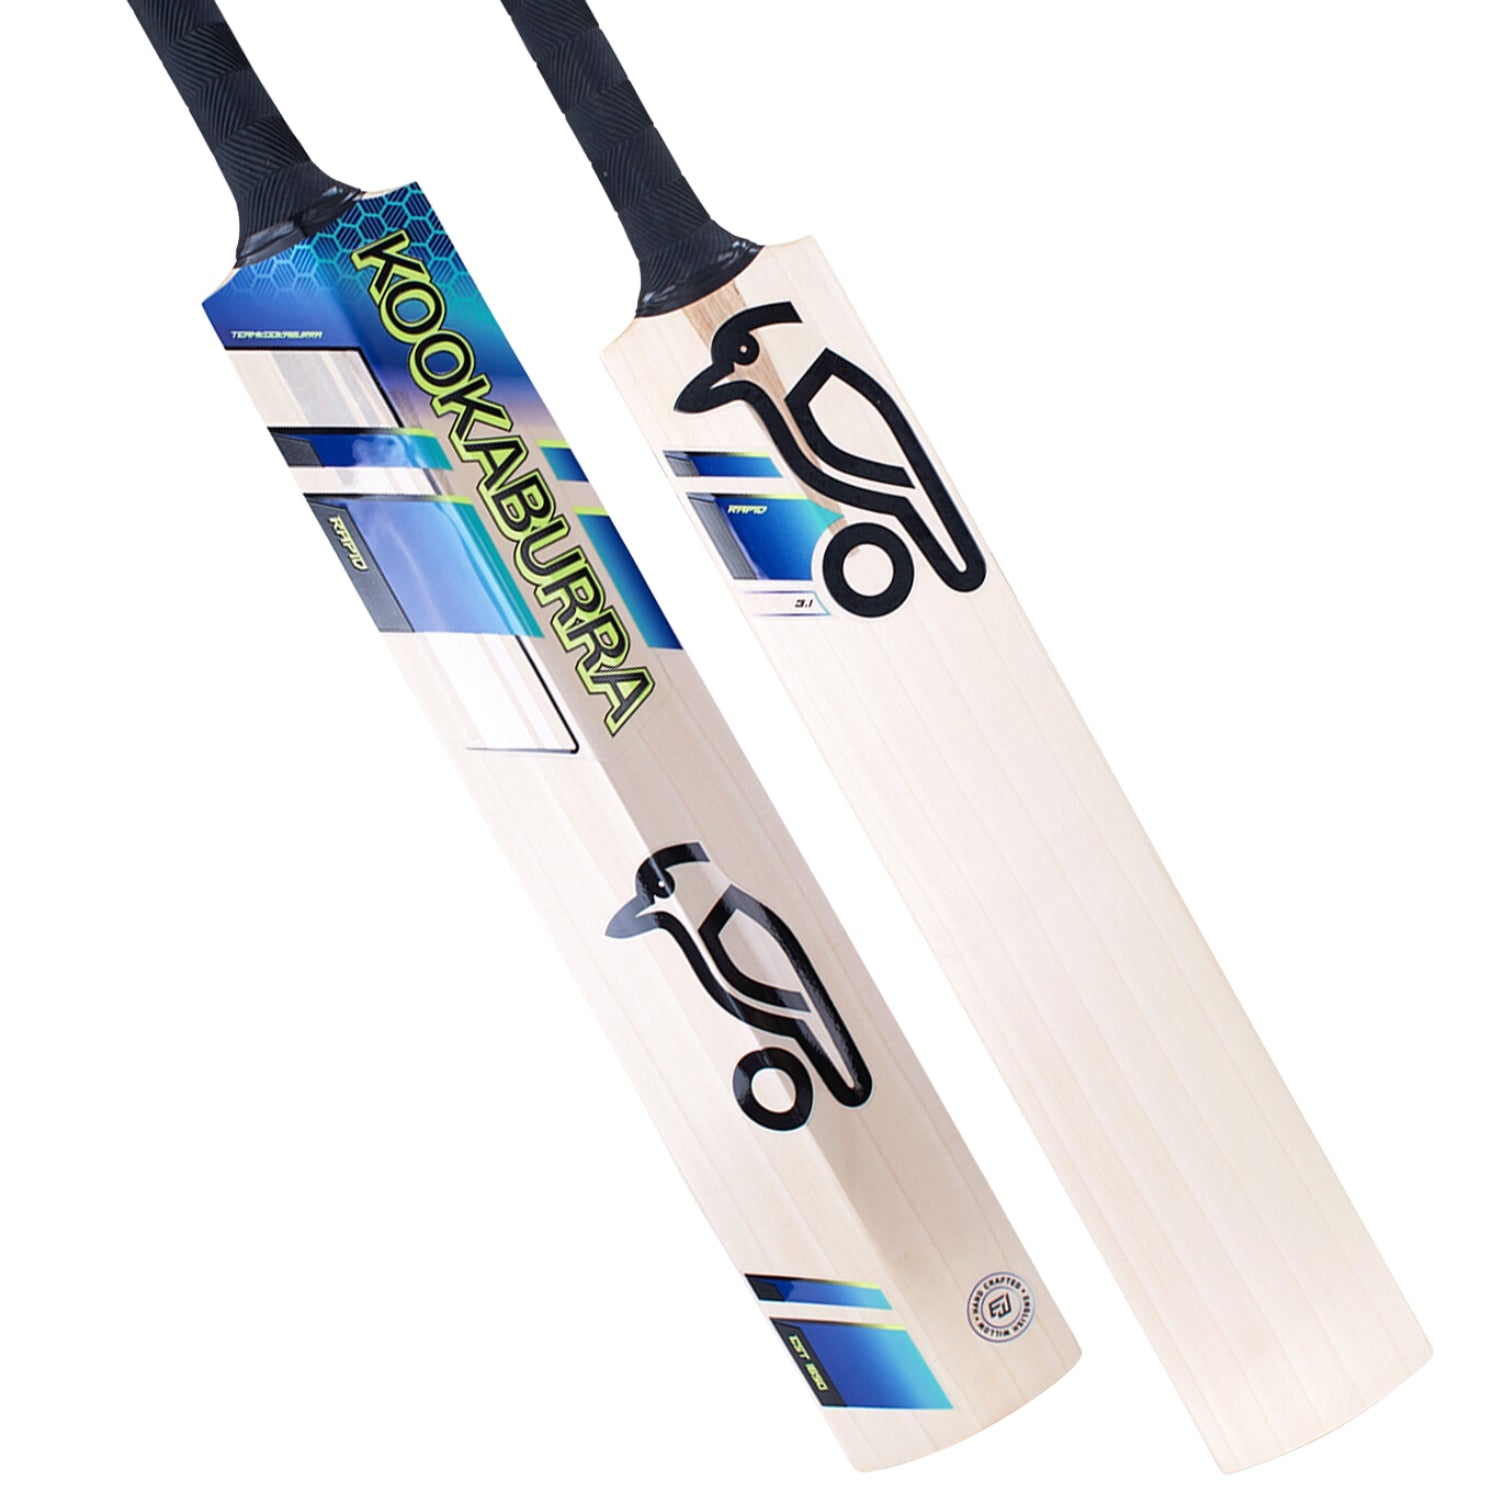 Kookaburra Rapid 3.1 English Willow Cricket Bat